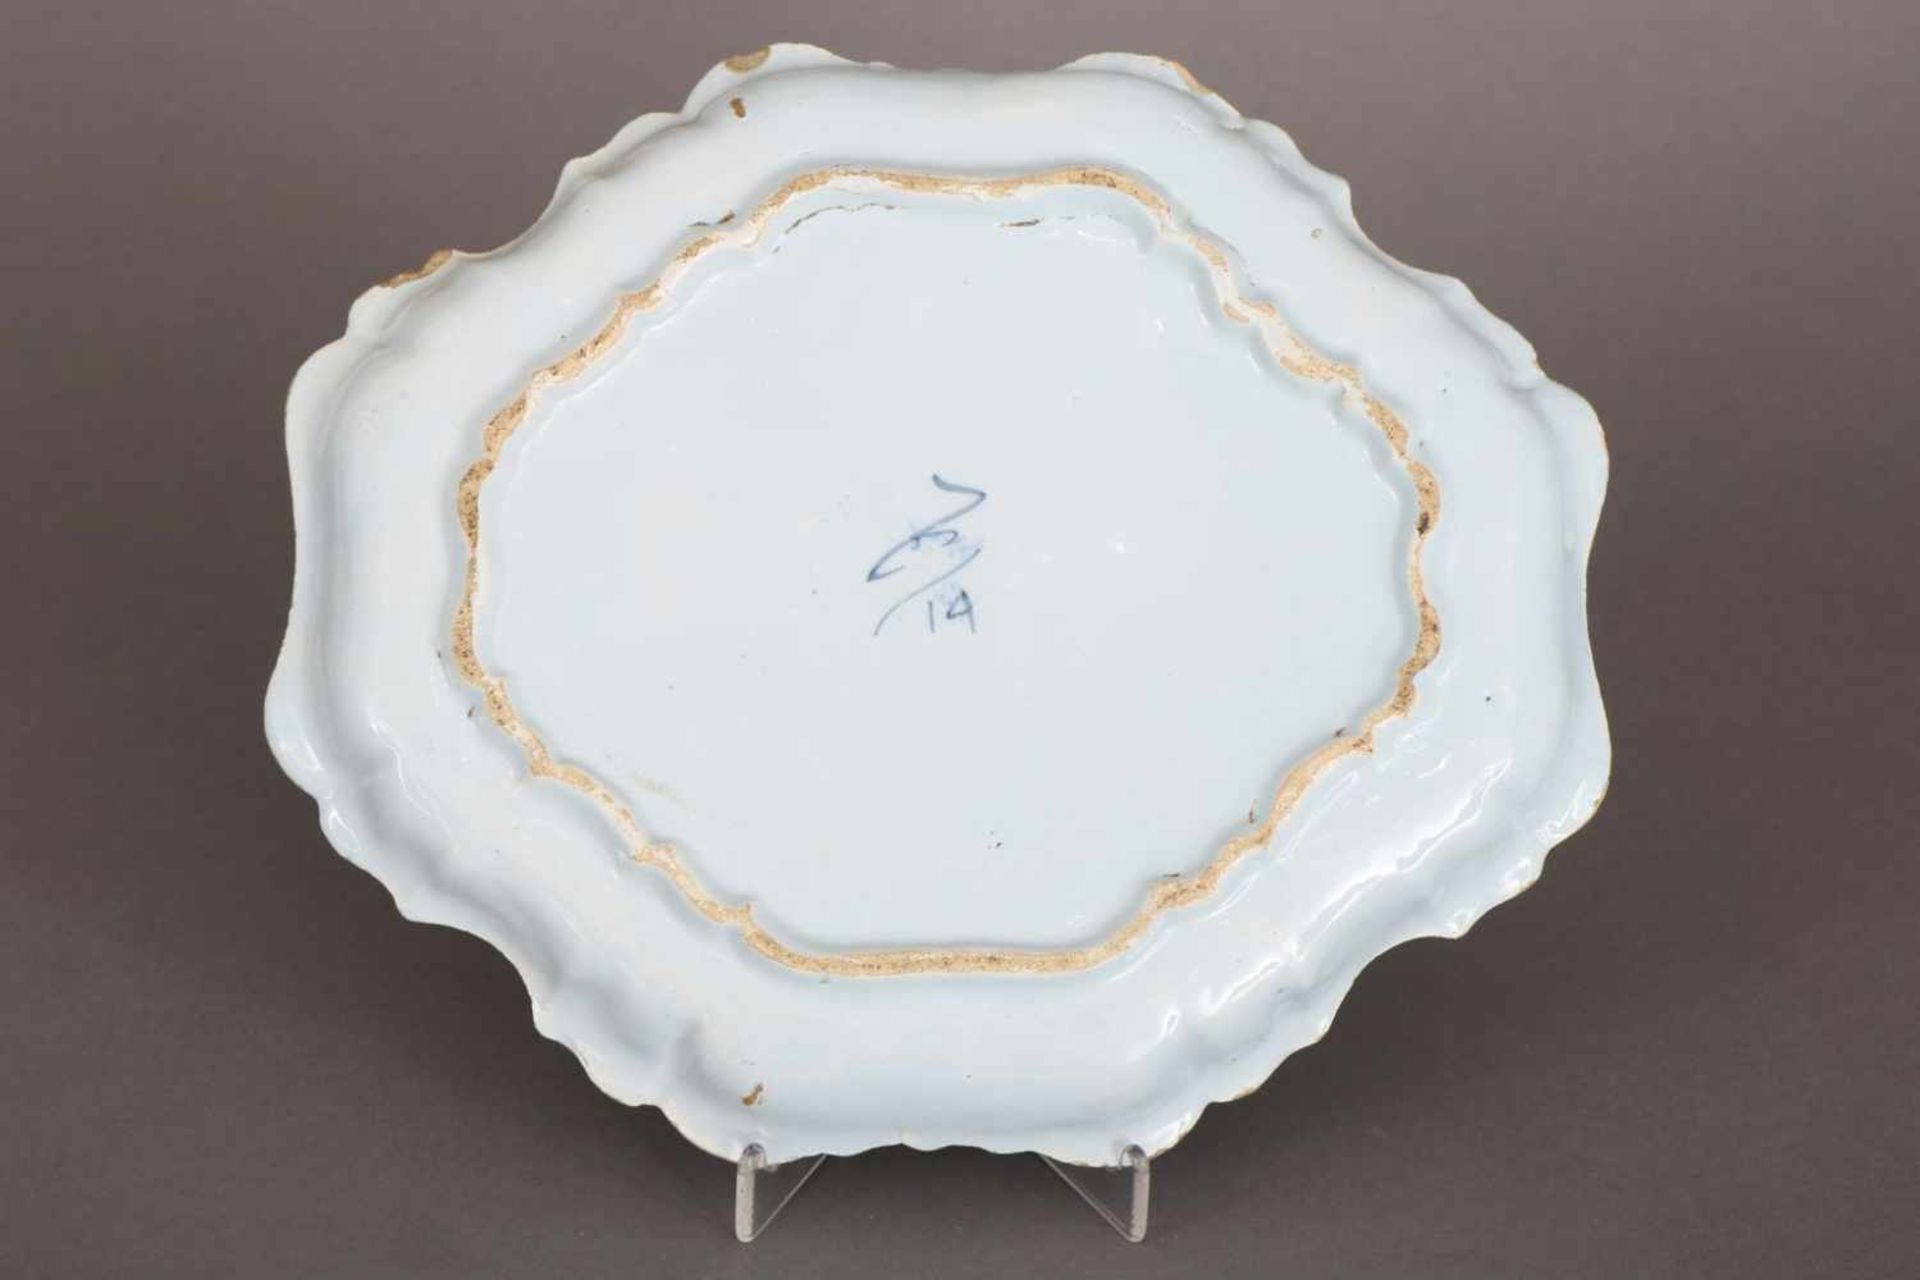 Fayence-PlatteDelft, 18. Jahrhundert, wohl ¨De Porceleyne Claeuw¨, oval-passige Platte mit - Bild 2 aus 3